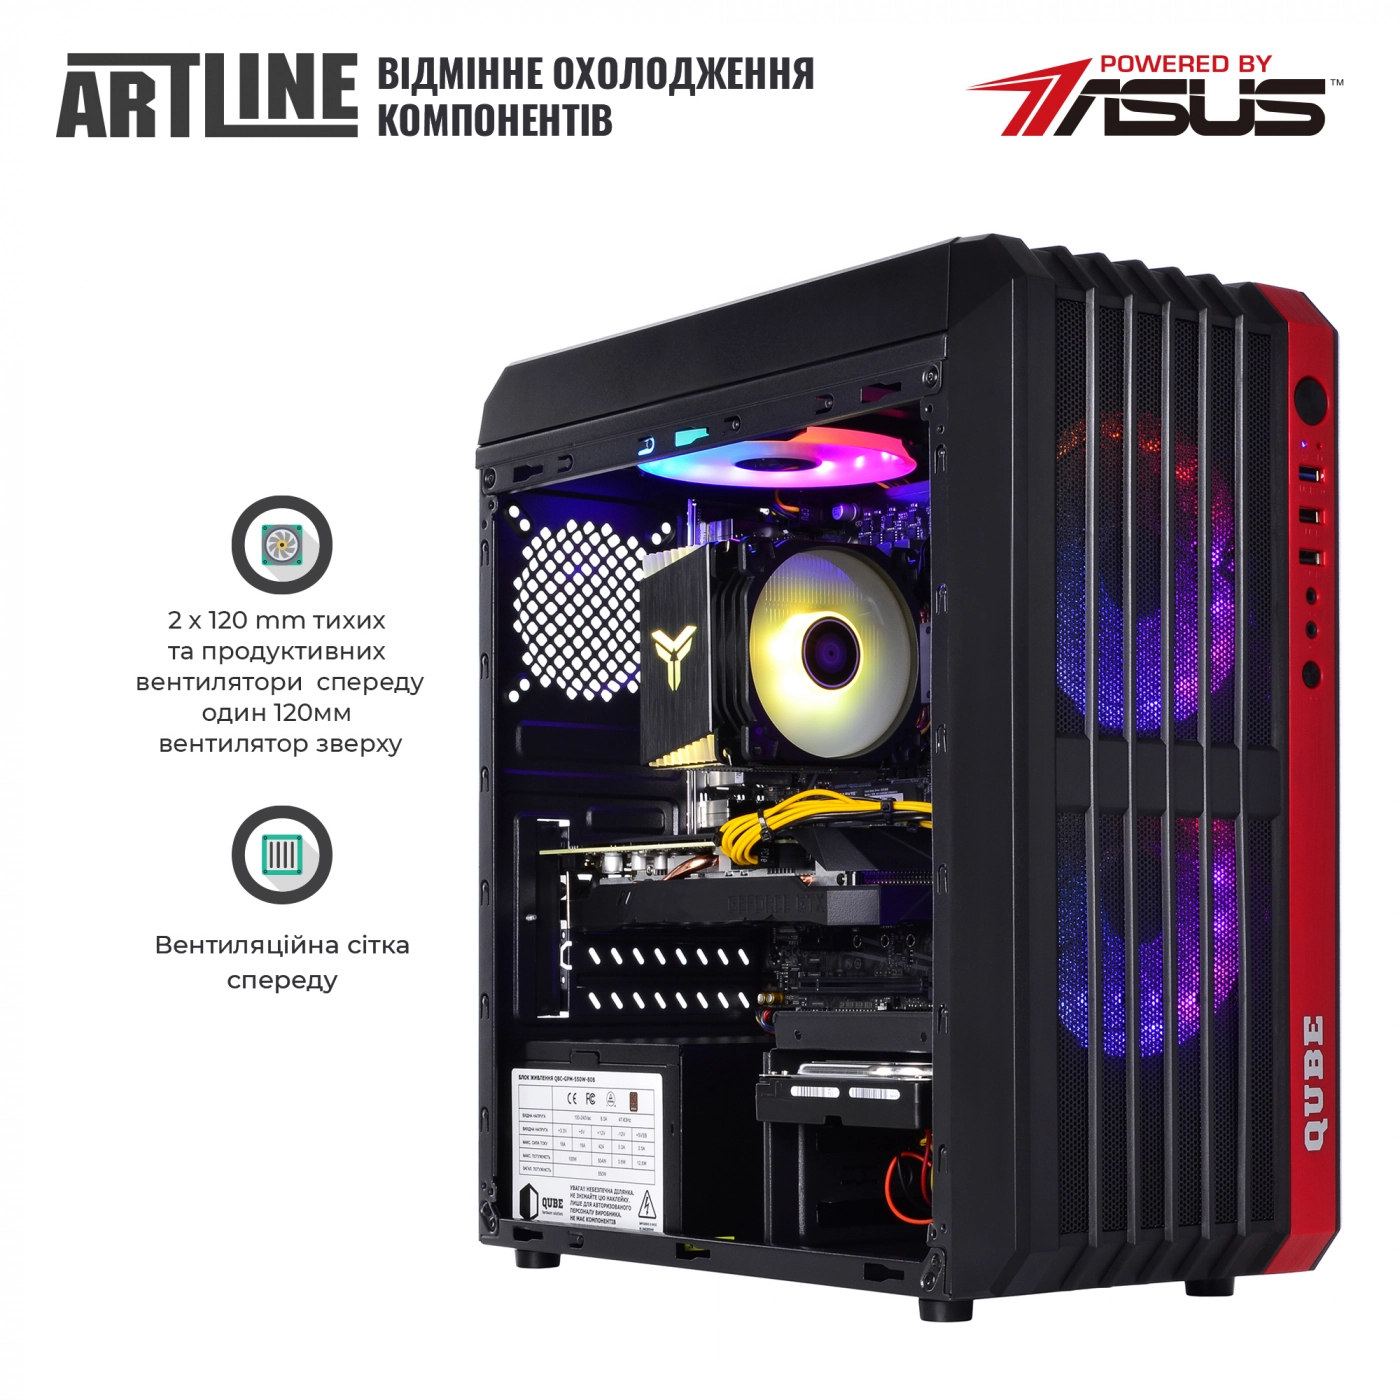 Купить Компьютер ARTLINE Gaming X37v33 - фото 2